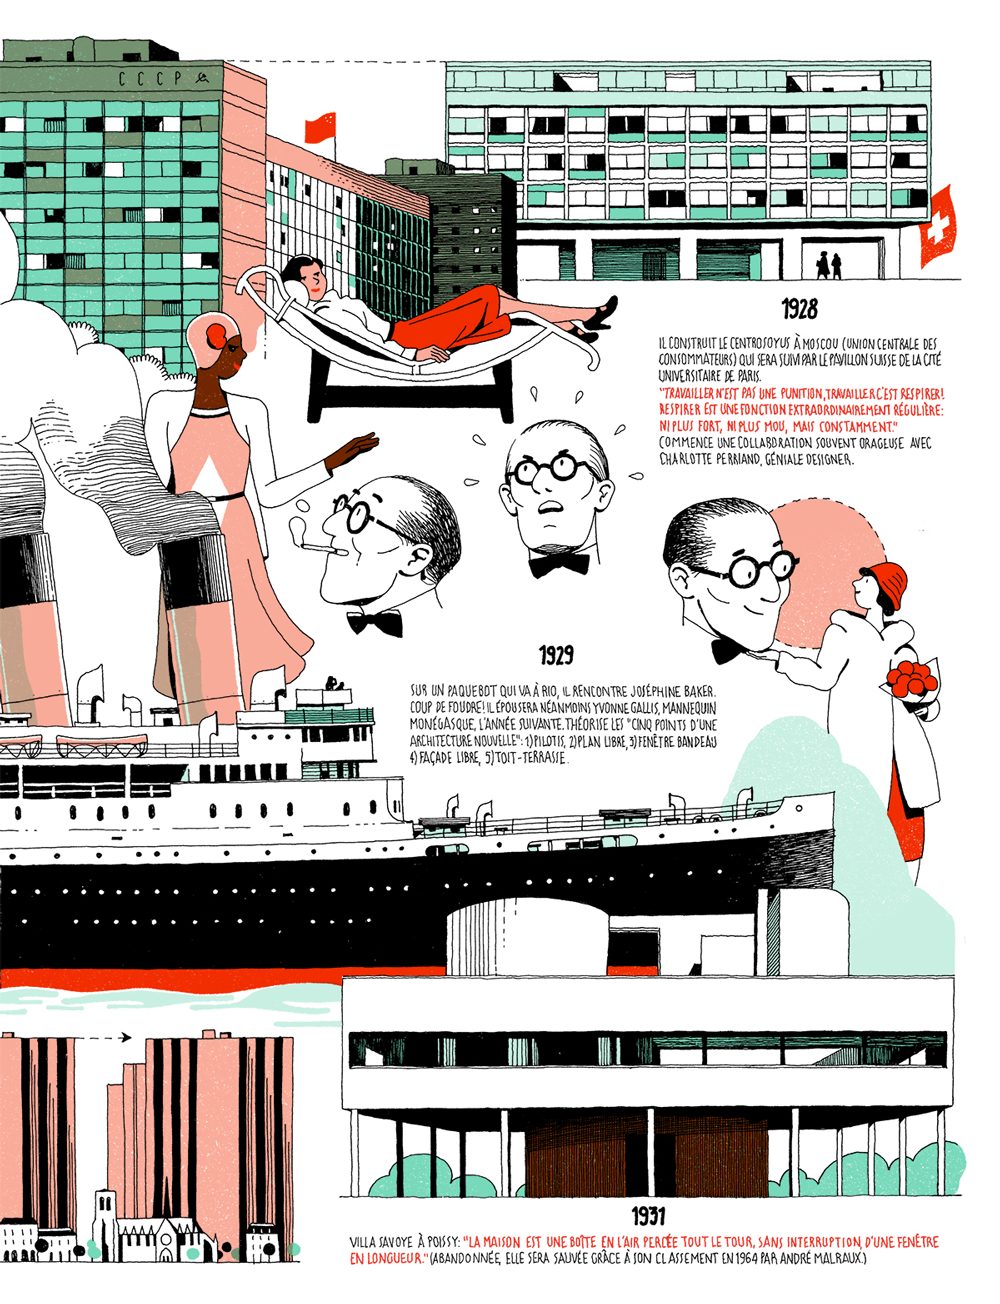 infografías ilustradas de Le Corbusier para el magazine cultural francés Télérama